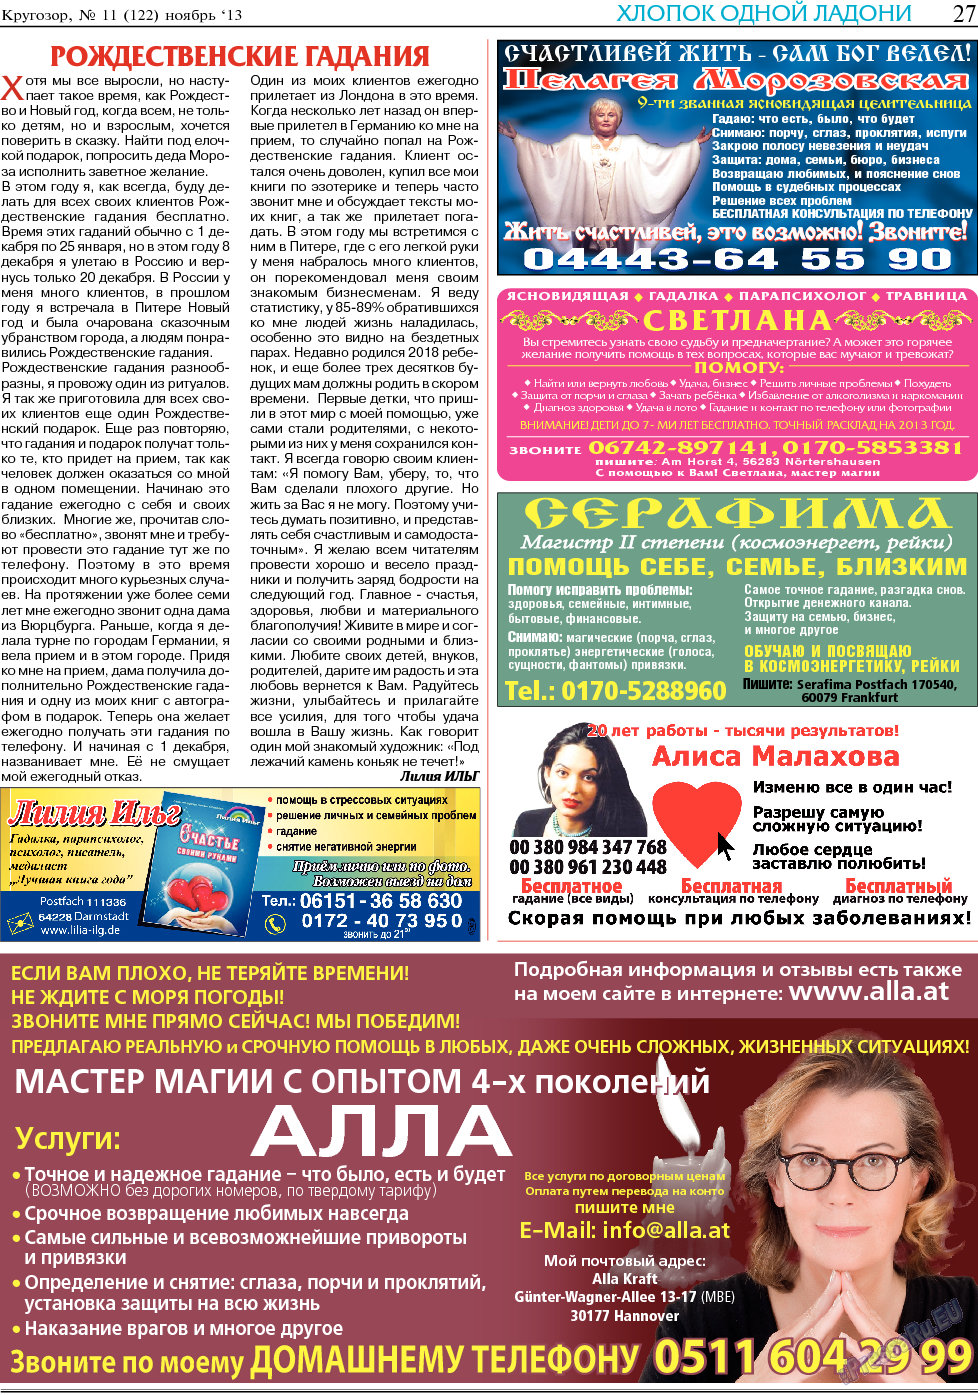 Кругозор, газета. 2013 №11 стр.27